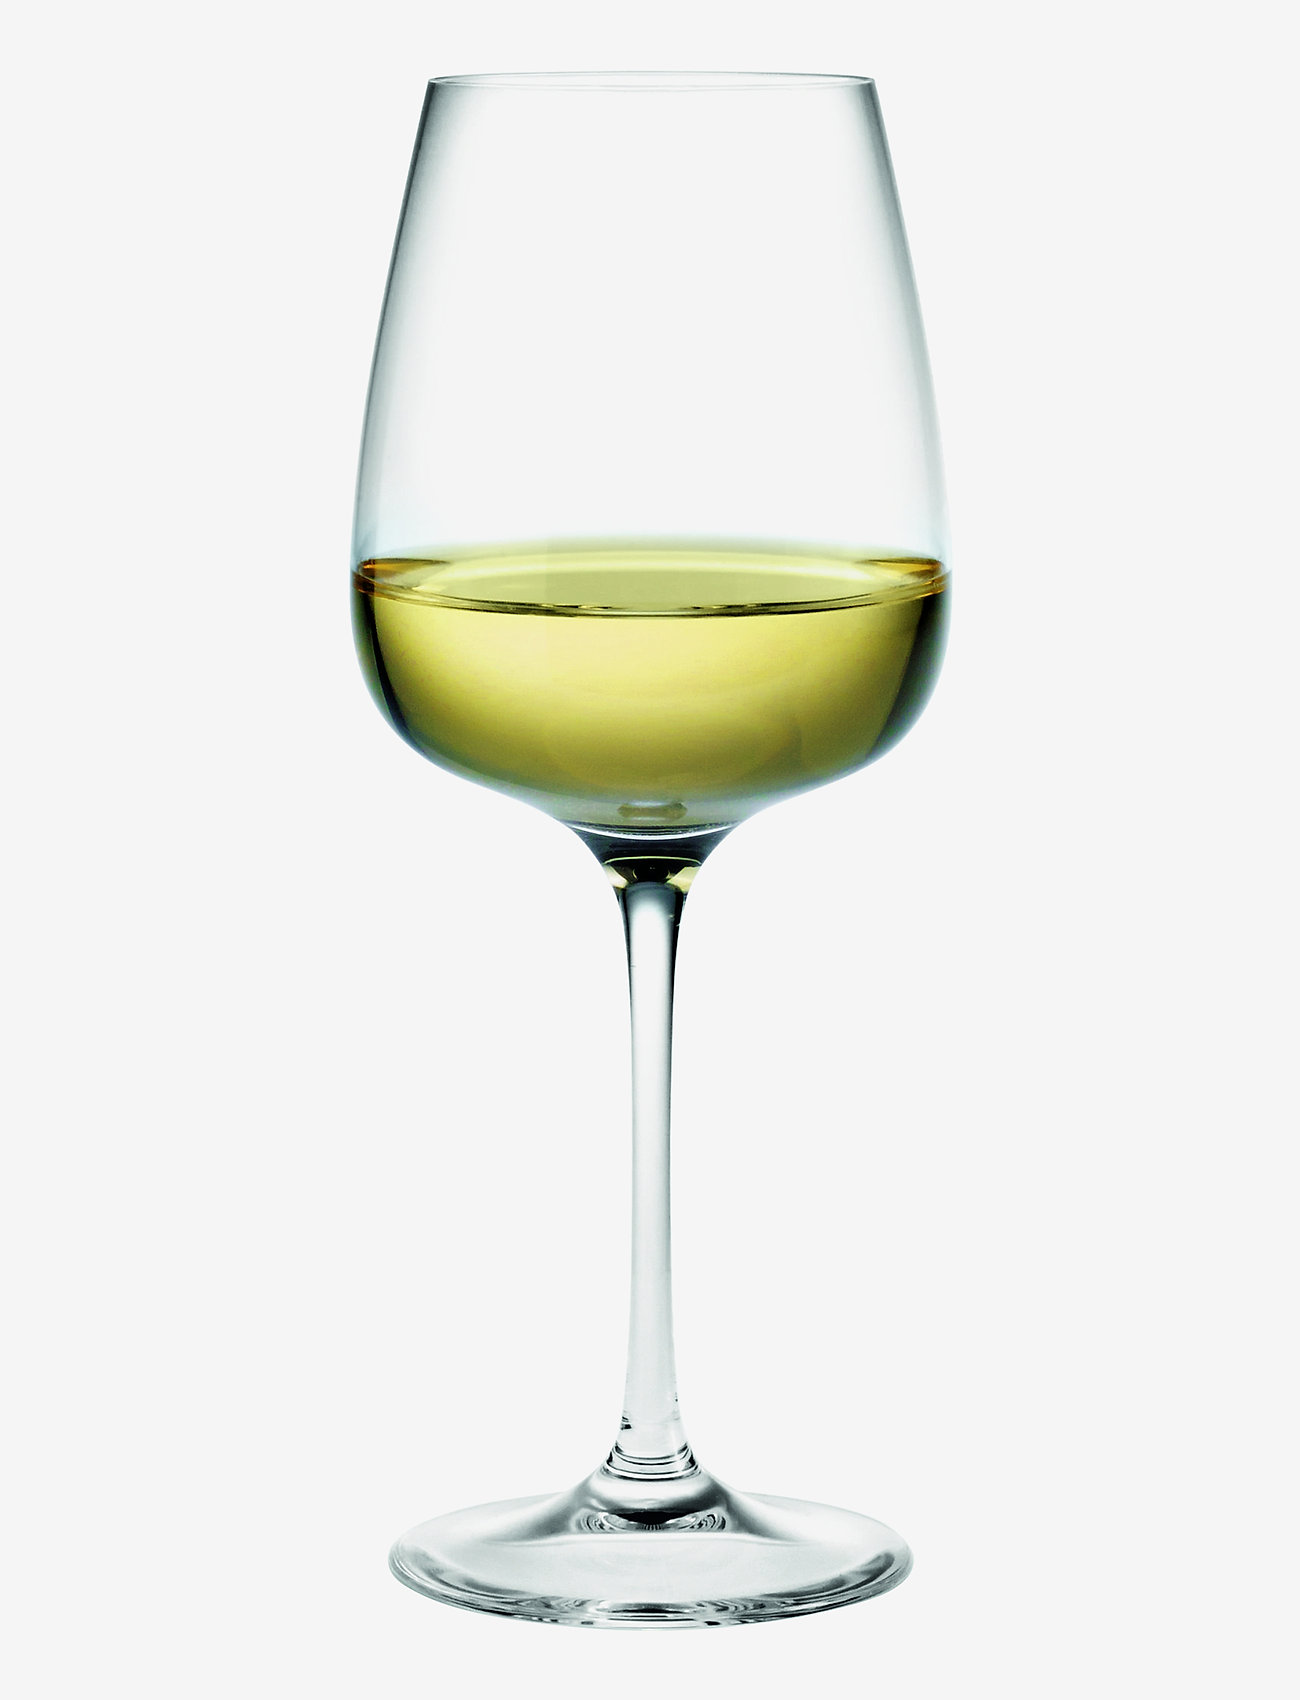 Holmegaard - Bouquet Dessert Wine Glass 32 cl 6-pack - weißweingläser - clear - 0